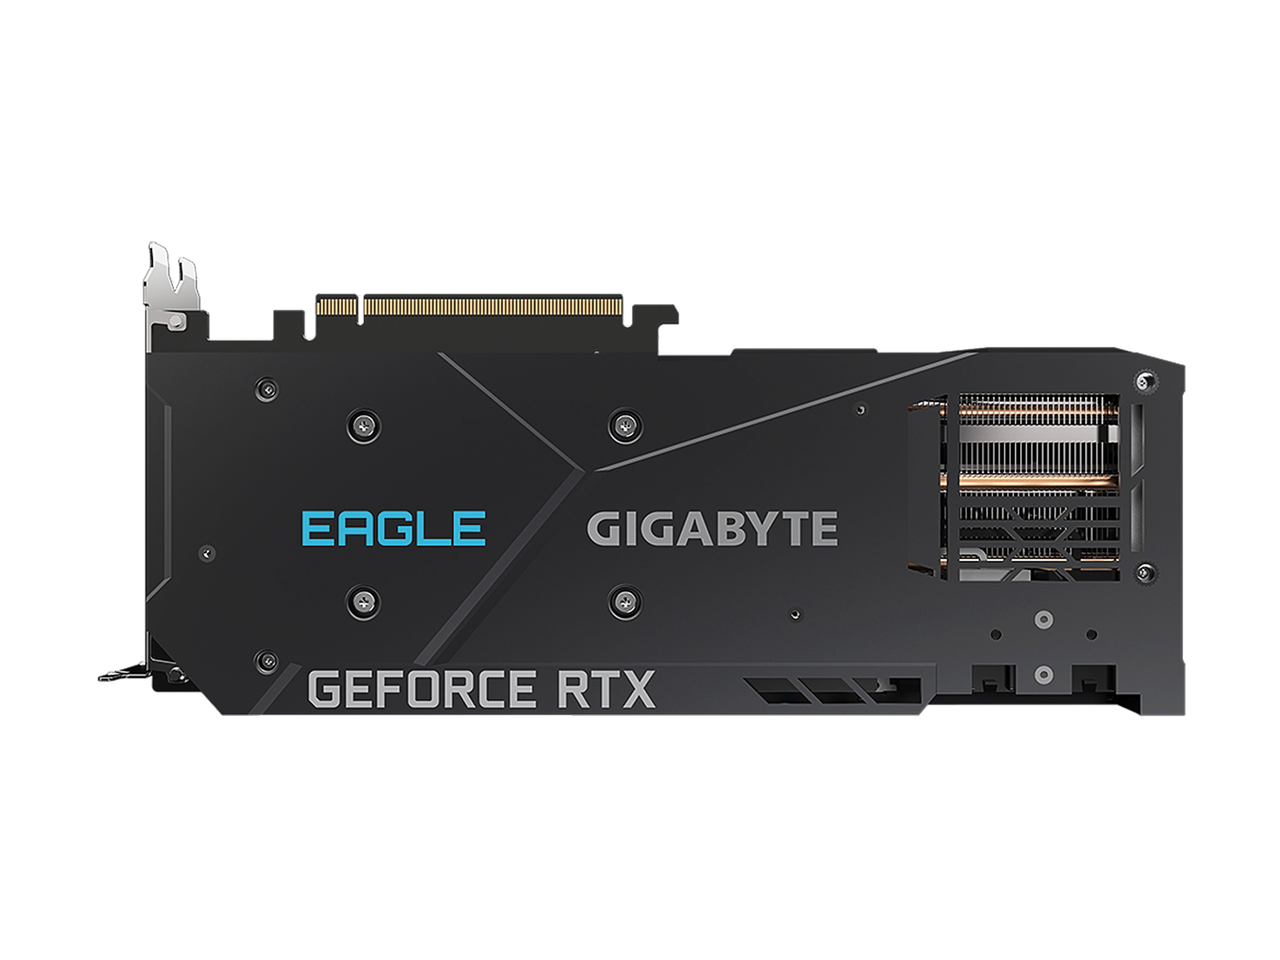 GIGABYTE Eagle OC GeForce RTX 3070 8GB GDDR6 PCI Express 4.0 ATX Video Card GV-N3070EAGLE OC-8GD (rev. 2.0) (LHR)